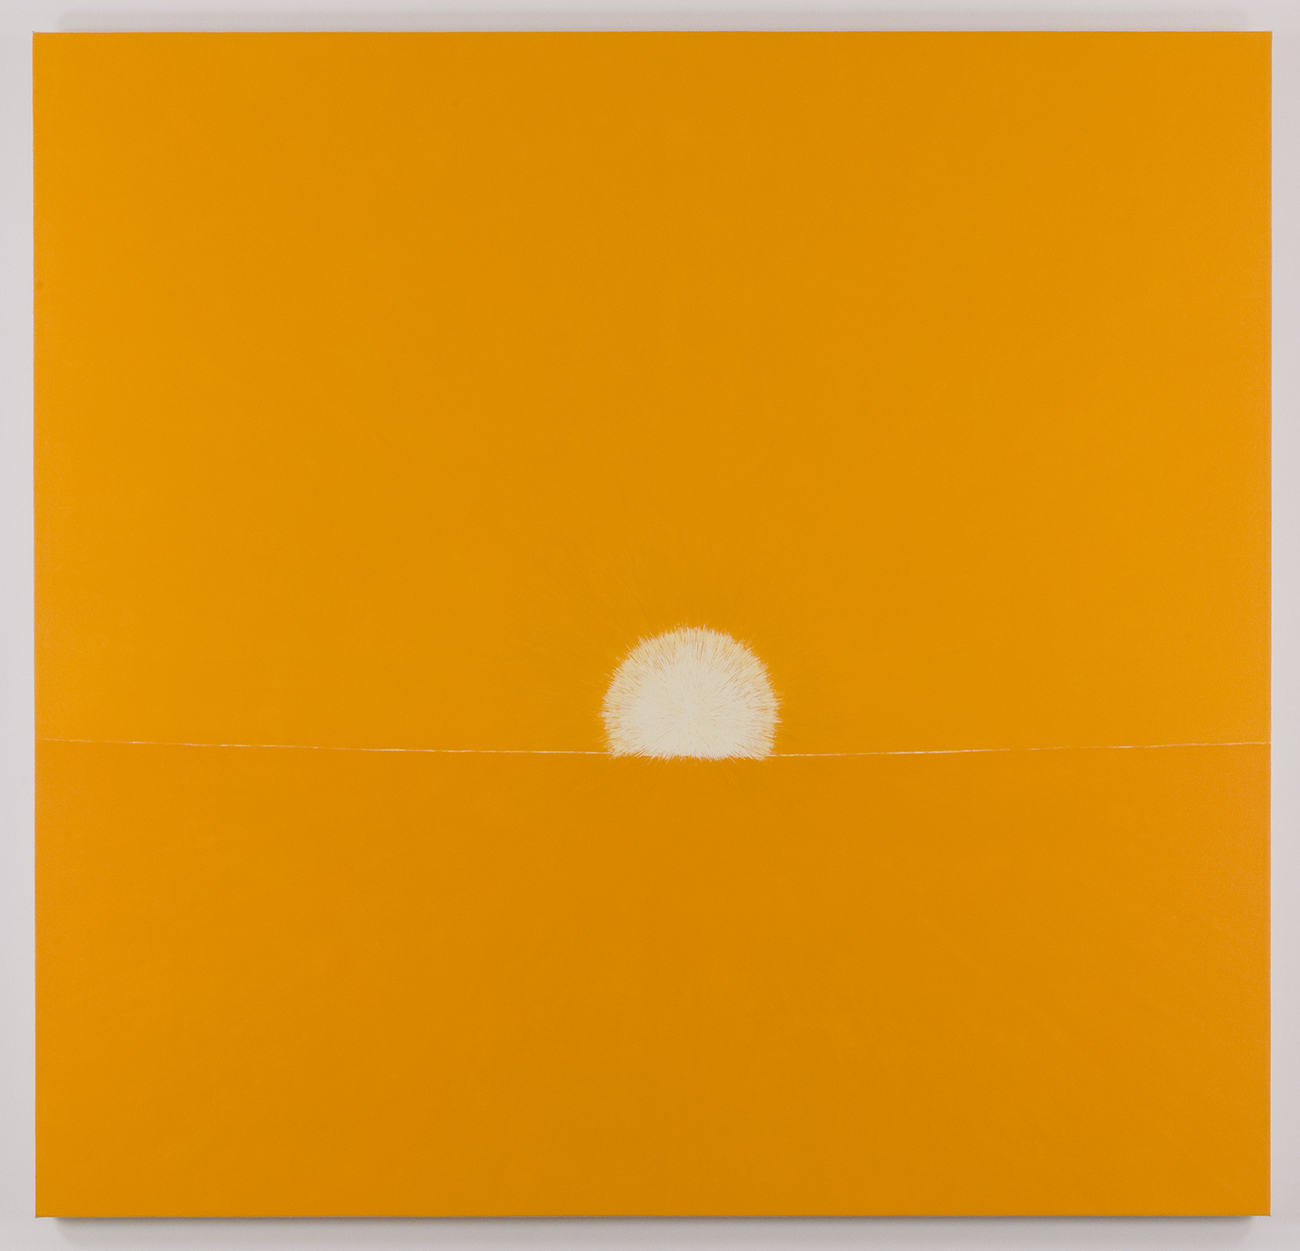 The rising sun 2008-11(01)｜oil on canvas｜220 x 230 cm｜2008 